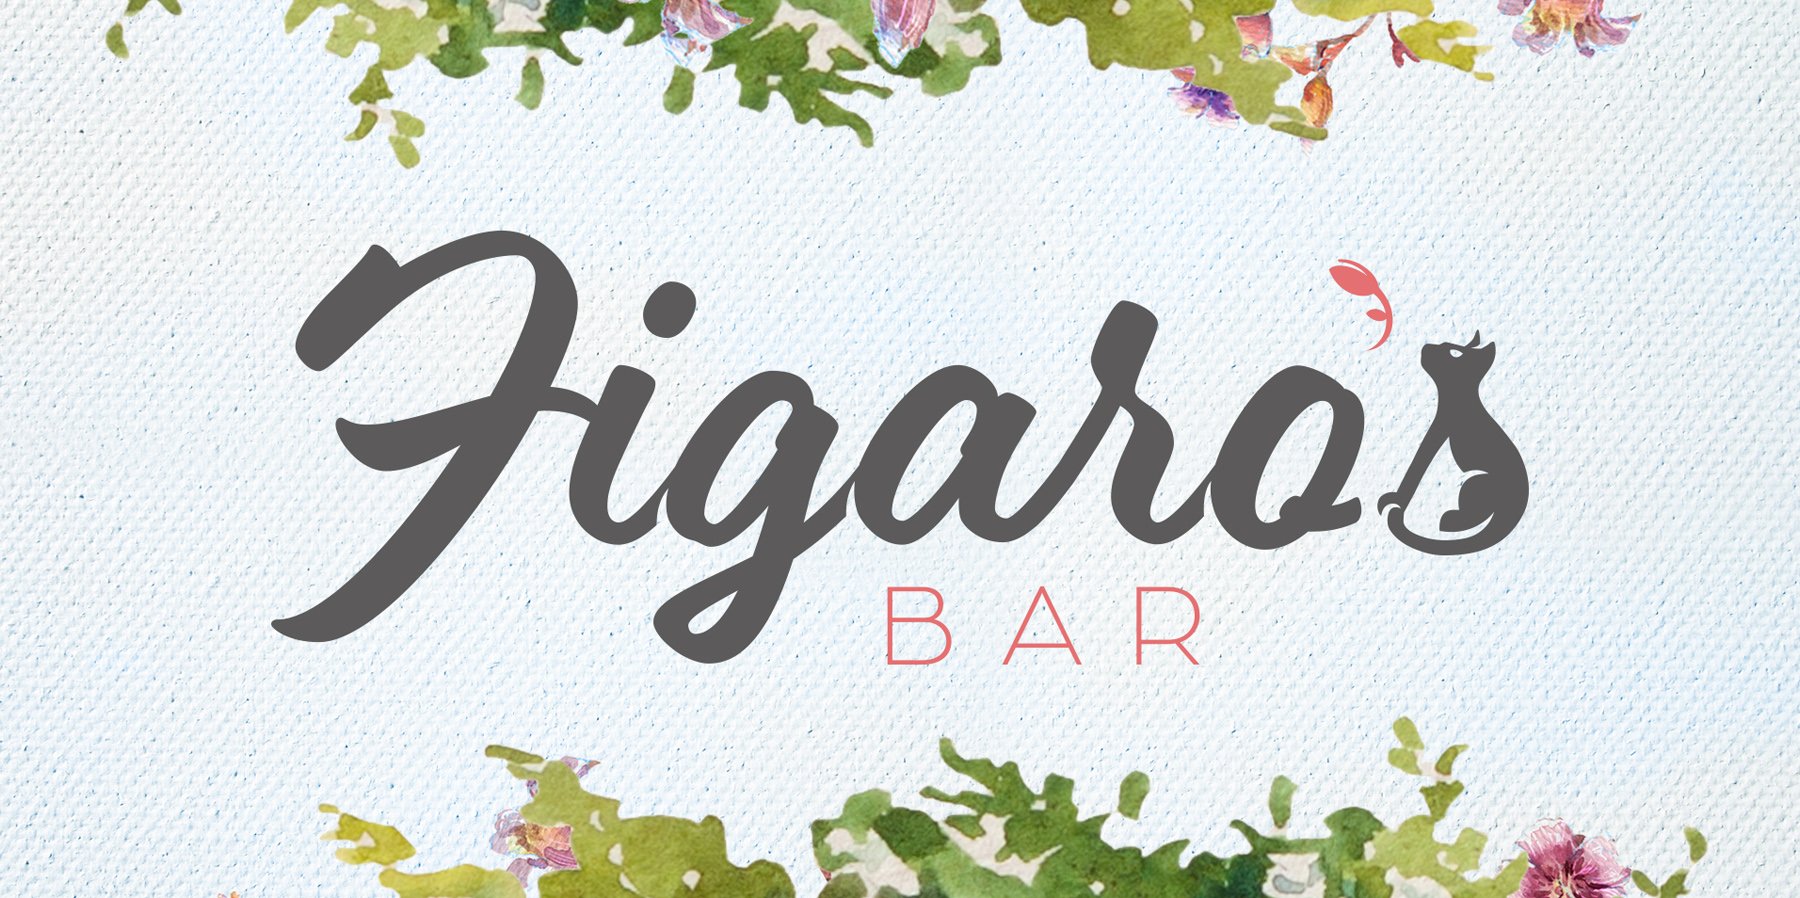 Figaro's_Bar_Carousel.jpg